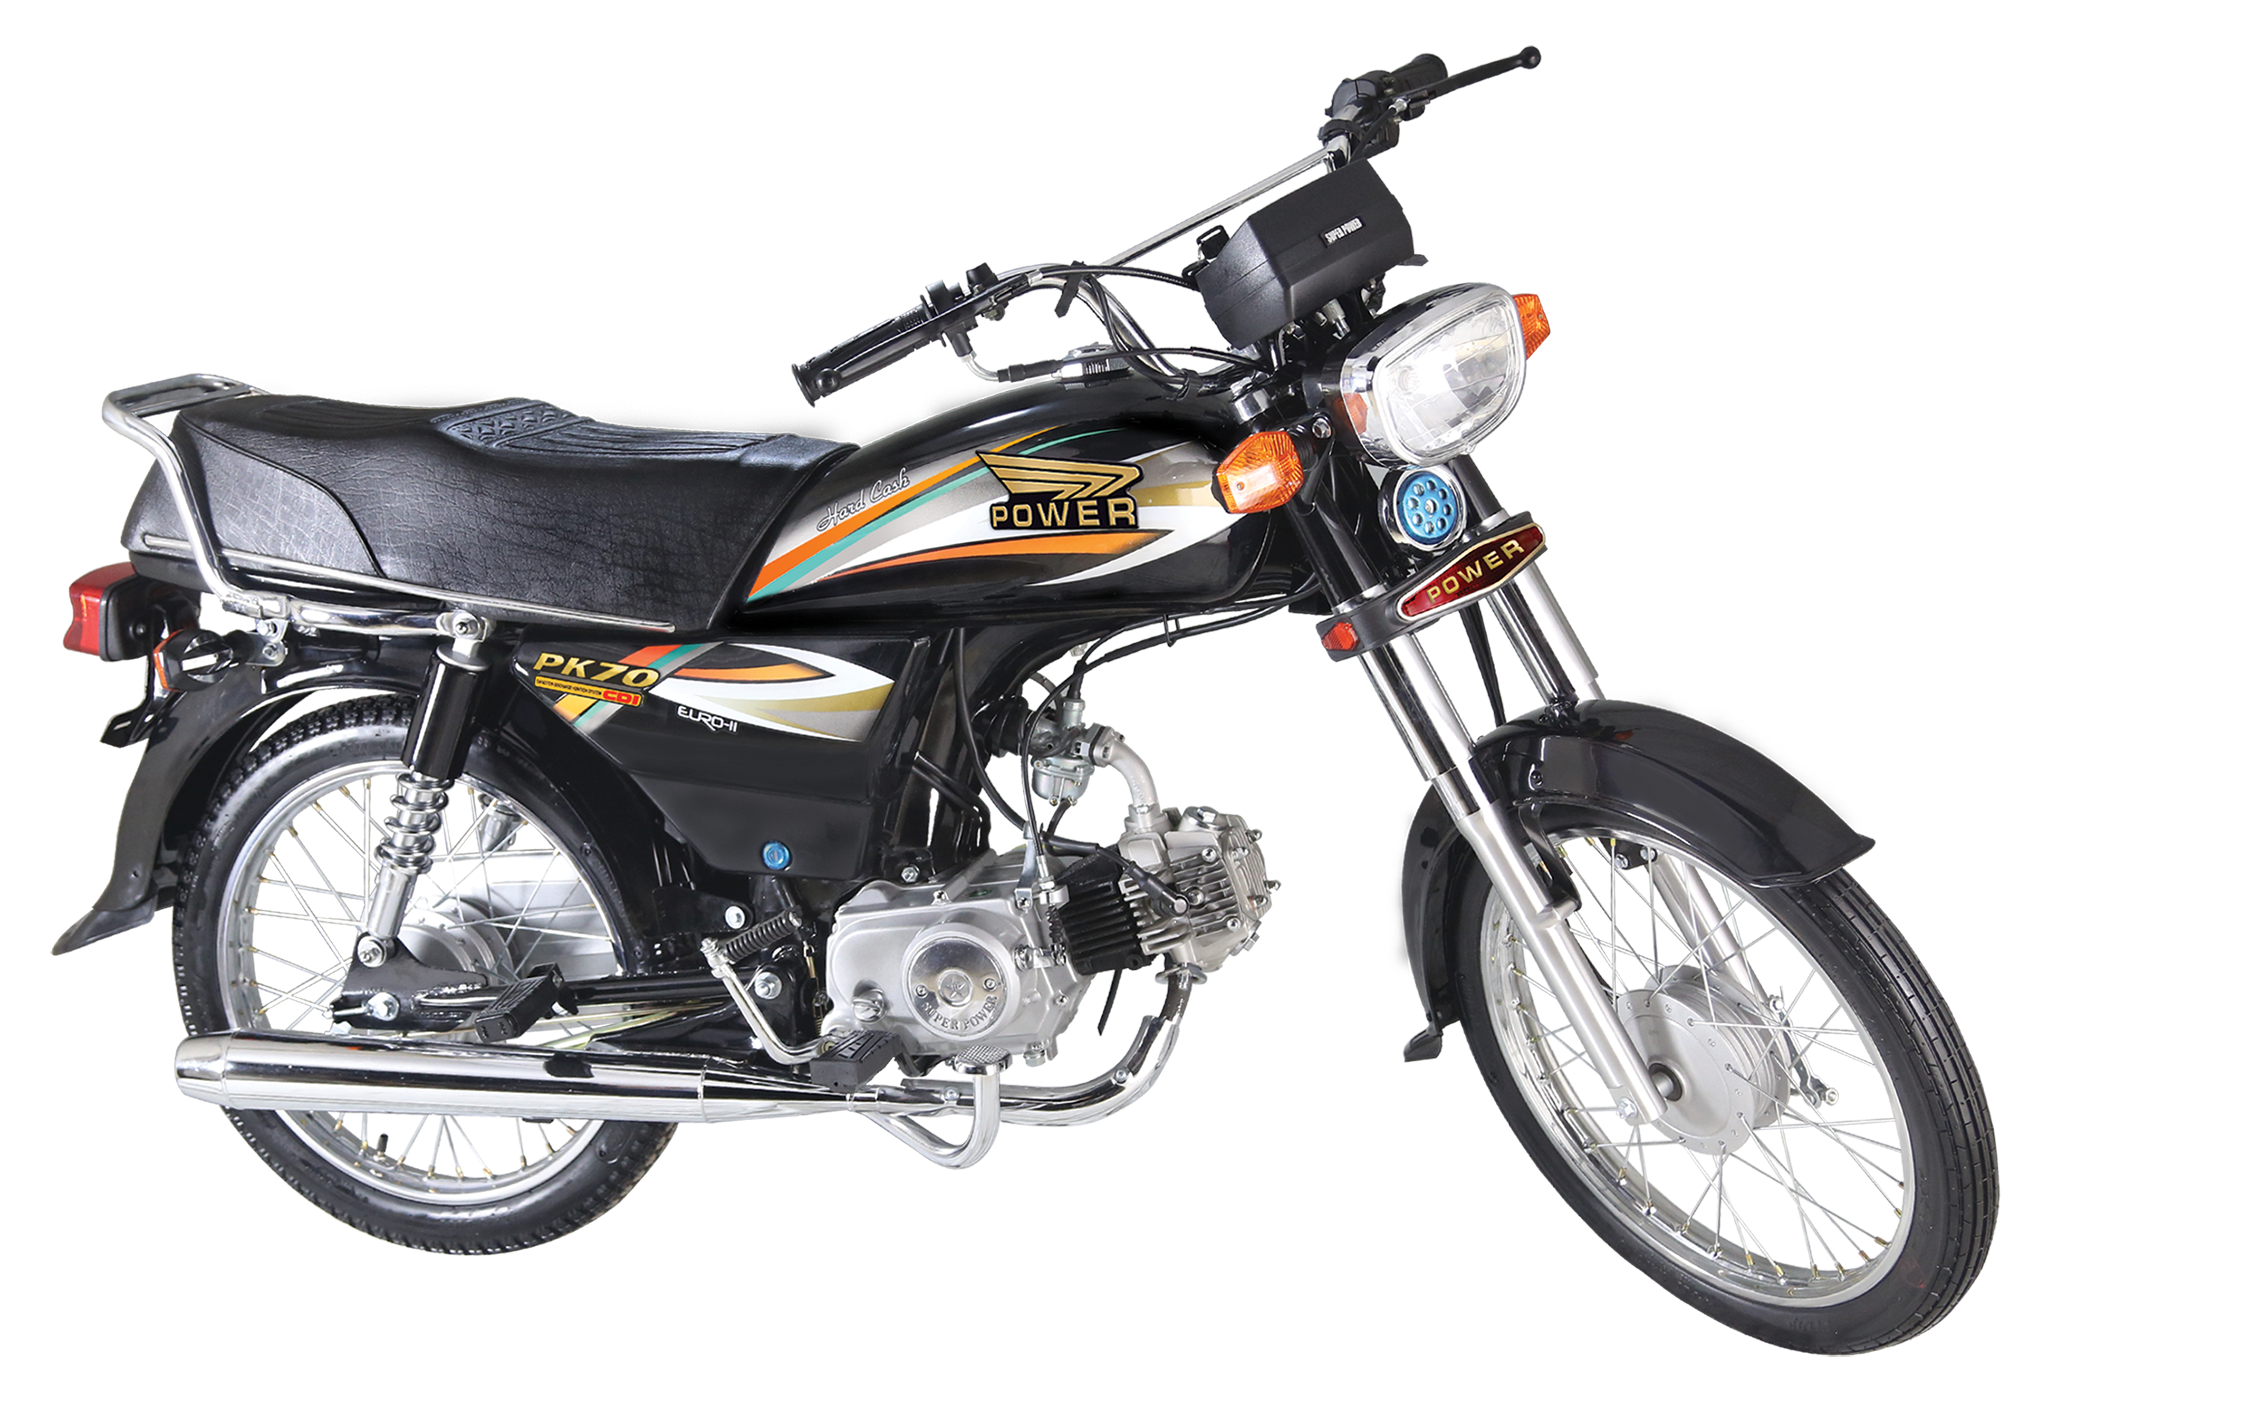 Honda CD 70 Price in Pakistan. Honda CD 70. Super Power Motorcycle CD 70. Honda CD 125. Honda 70